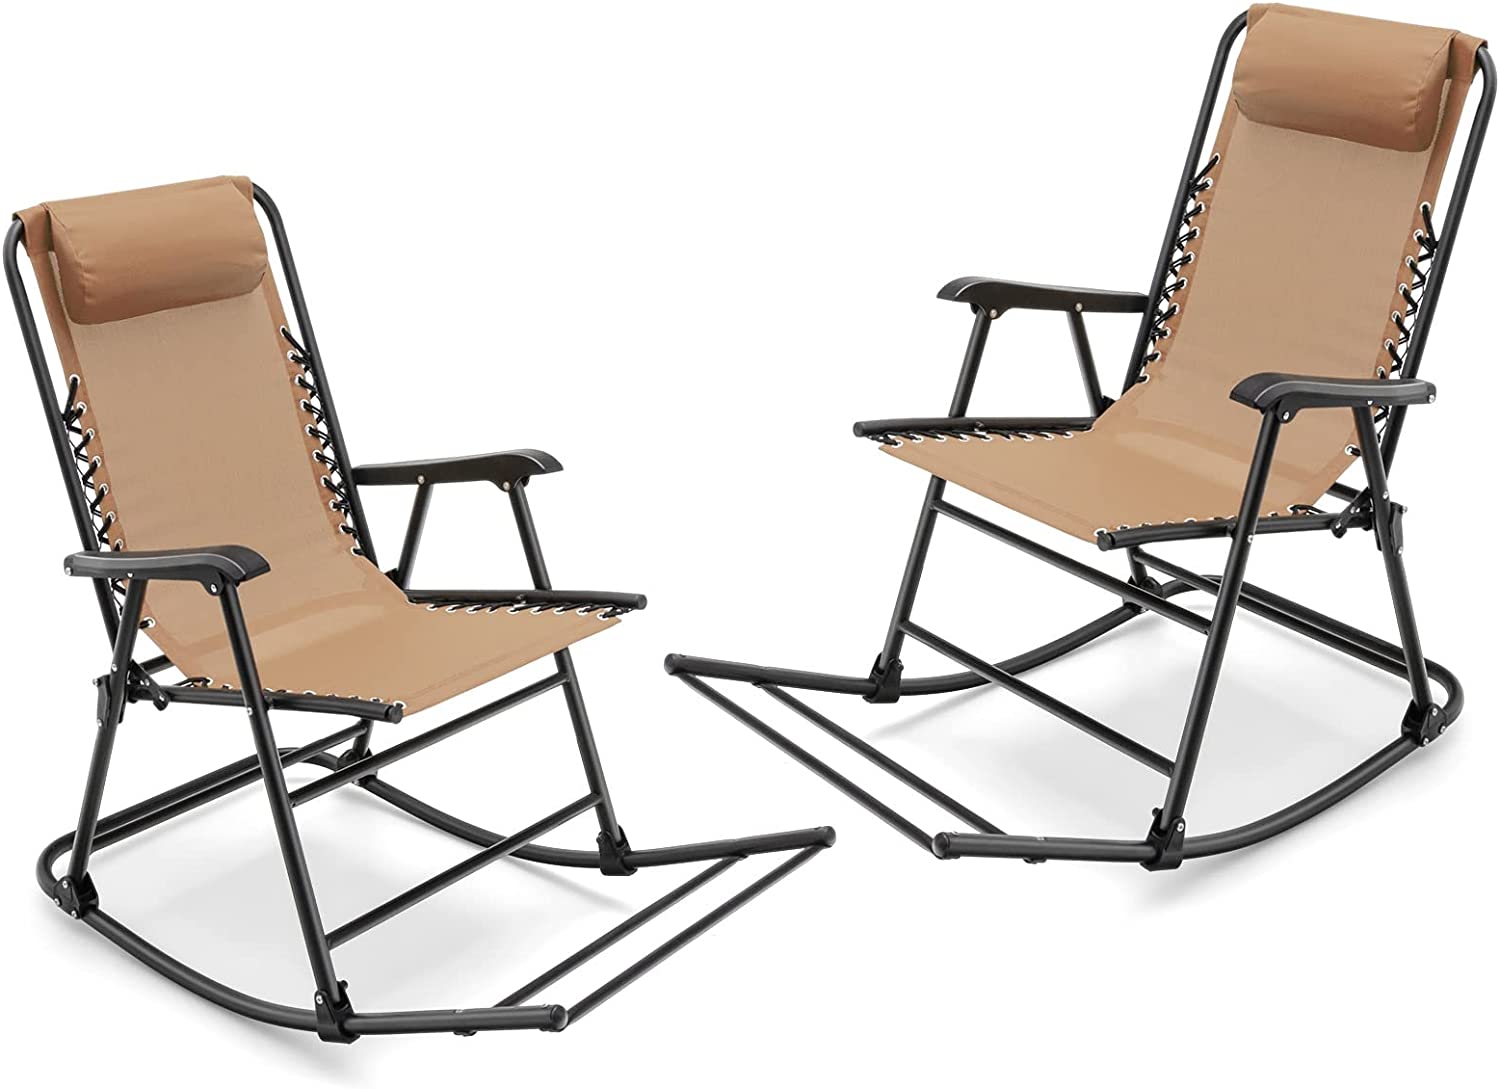 Giantex Rocking Camping Chair Folding - Outdoor Rocker Camping Chair